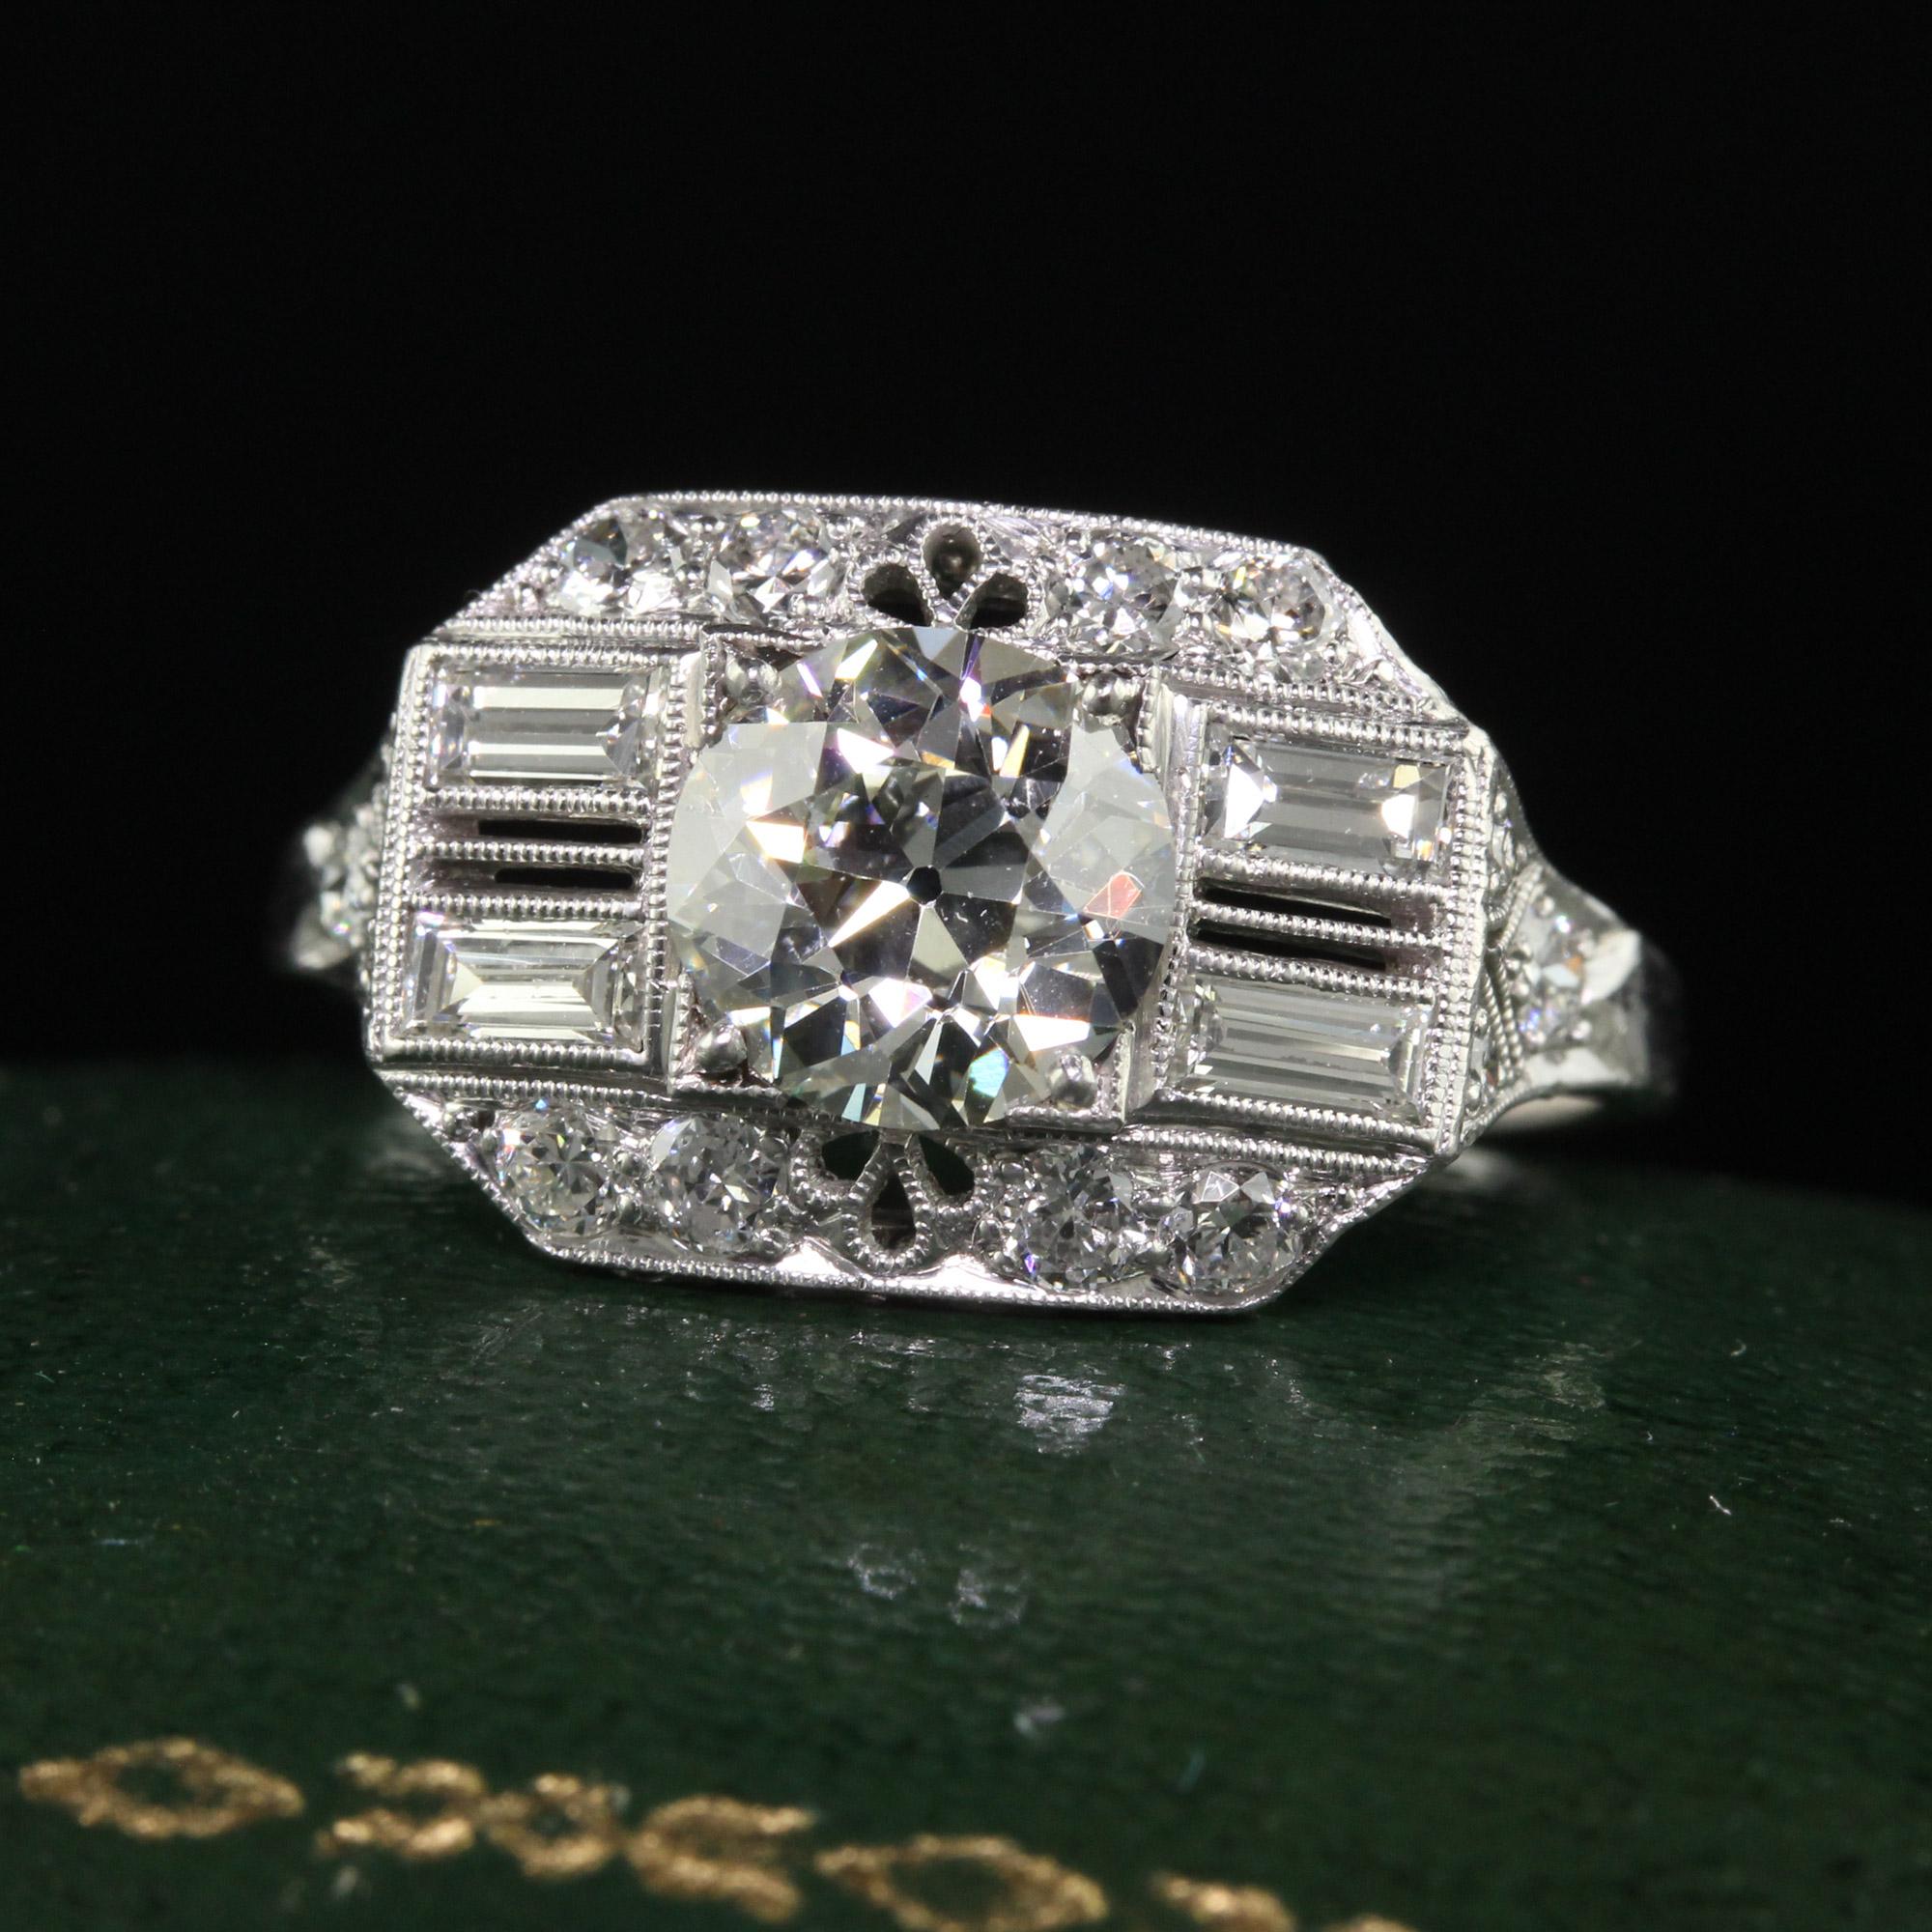 Schöner antiker Art Deco Platin Alter Europäischer Diamant Filigraner Verlobungsring - GIA. Dieser unglaubliche Art-Deco-Verlobungsring ist aus Platin gefertigt. In der Mitte befindet sich ein wunderschöner Diamant im alten europäischen Schliff, der